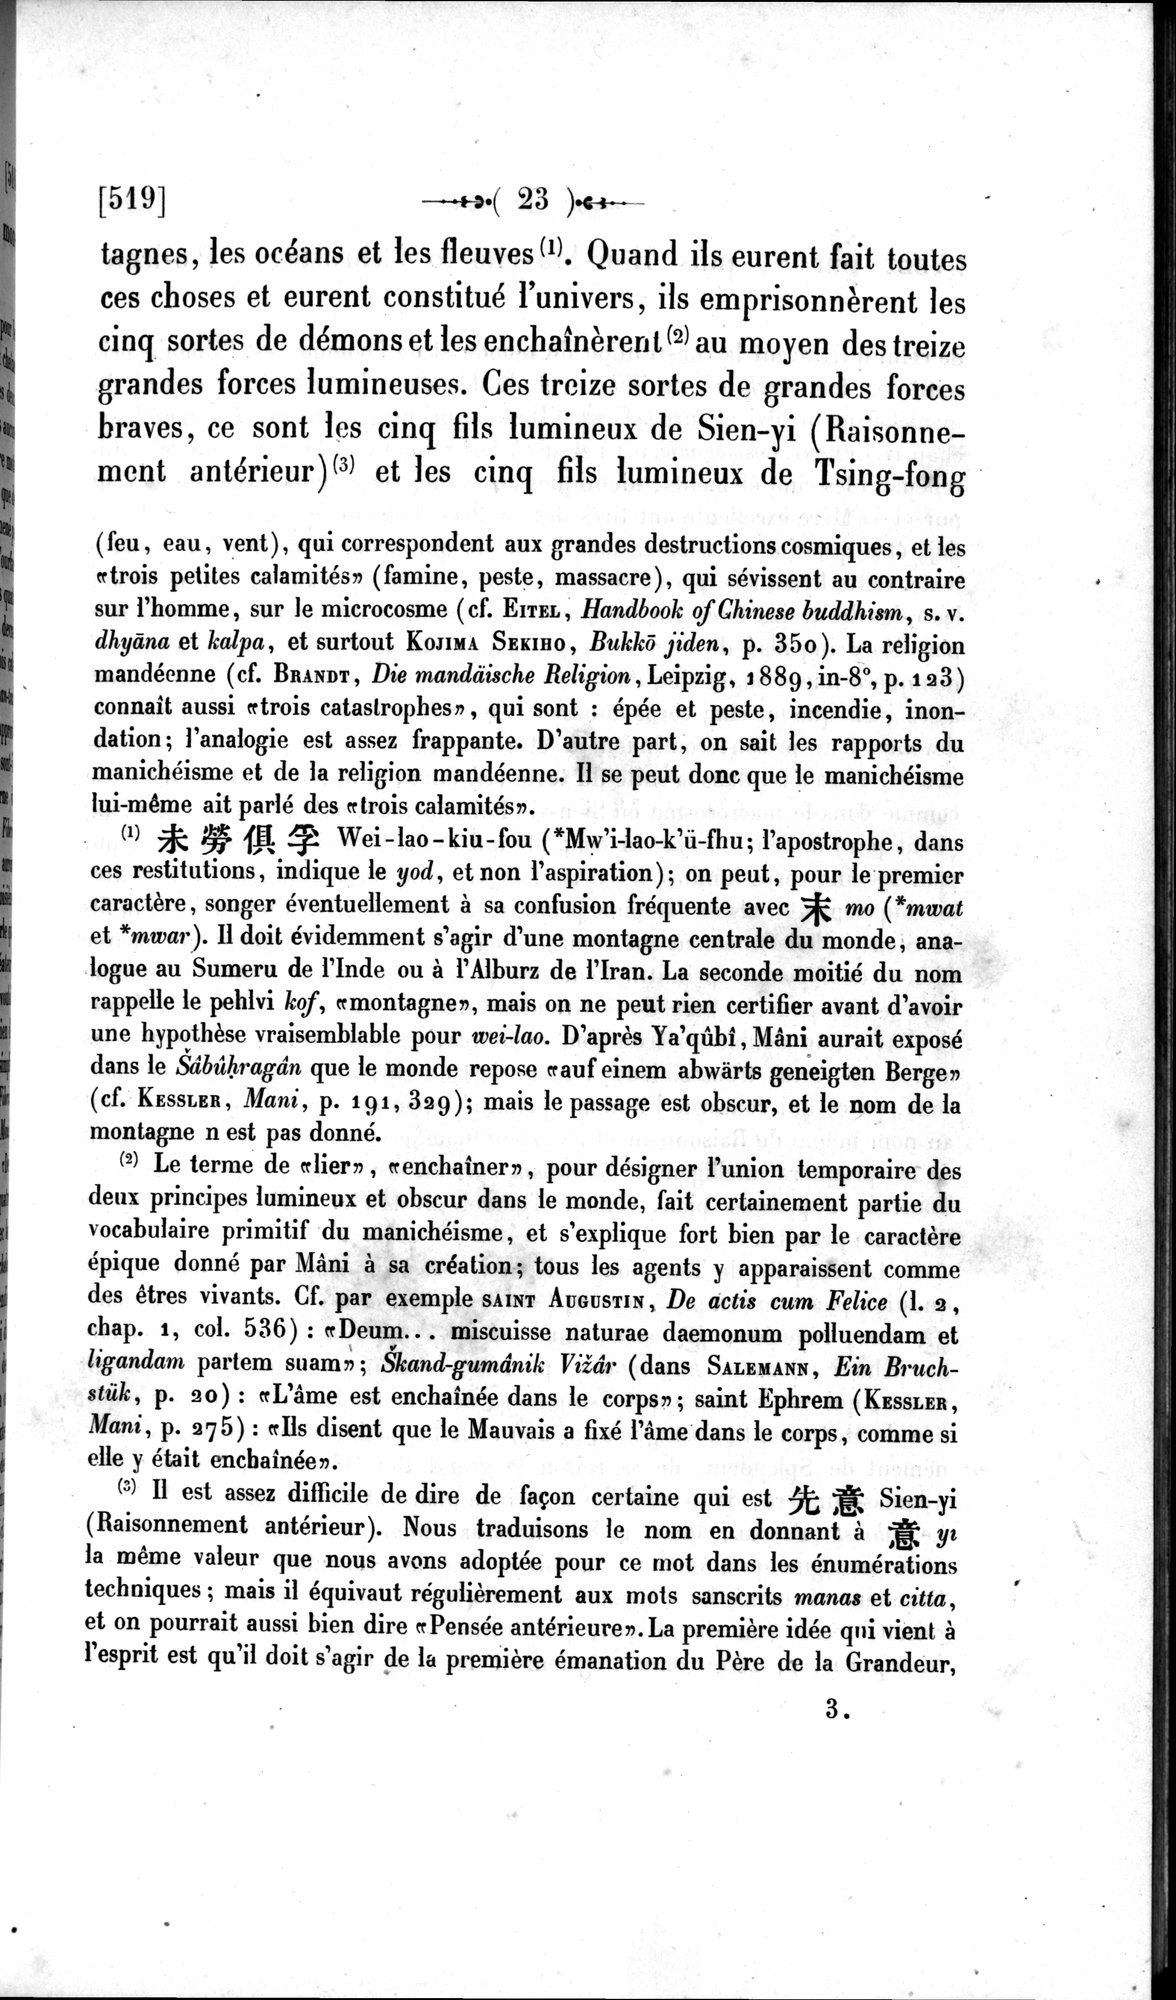 Un traité manichéen retrouvé en Chine : vol.1 / Page 33 (Grayscale High Resolution Image)